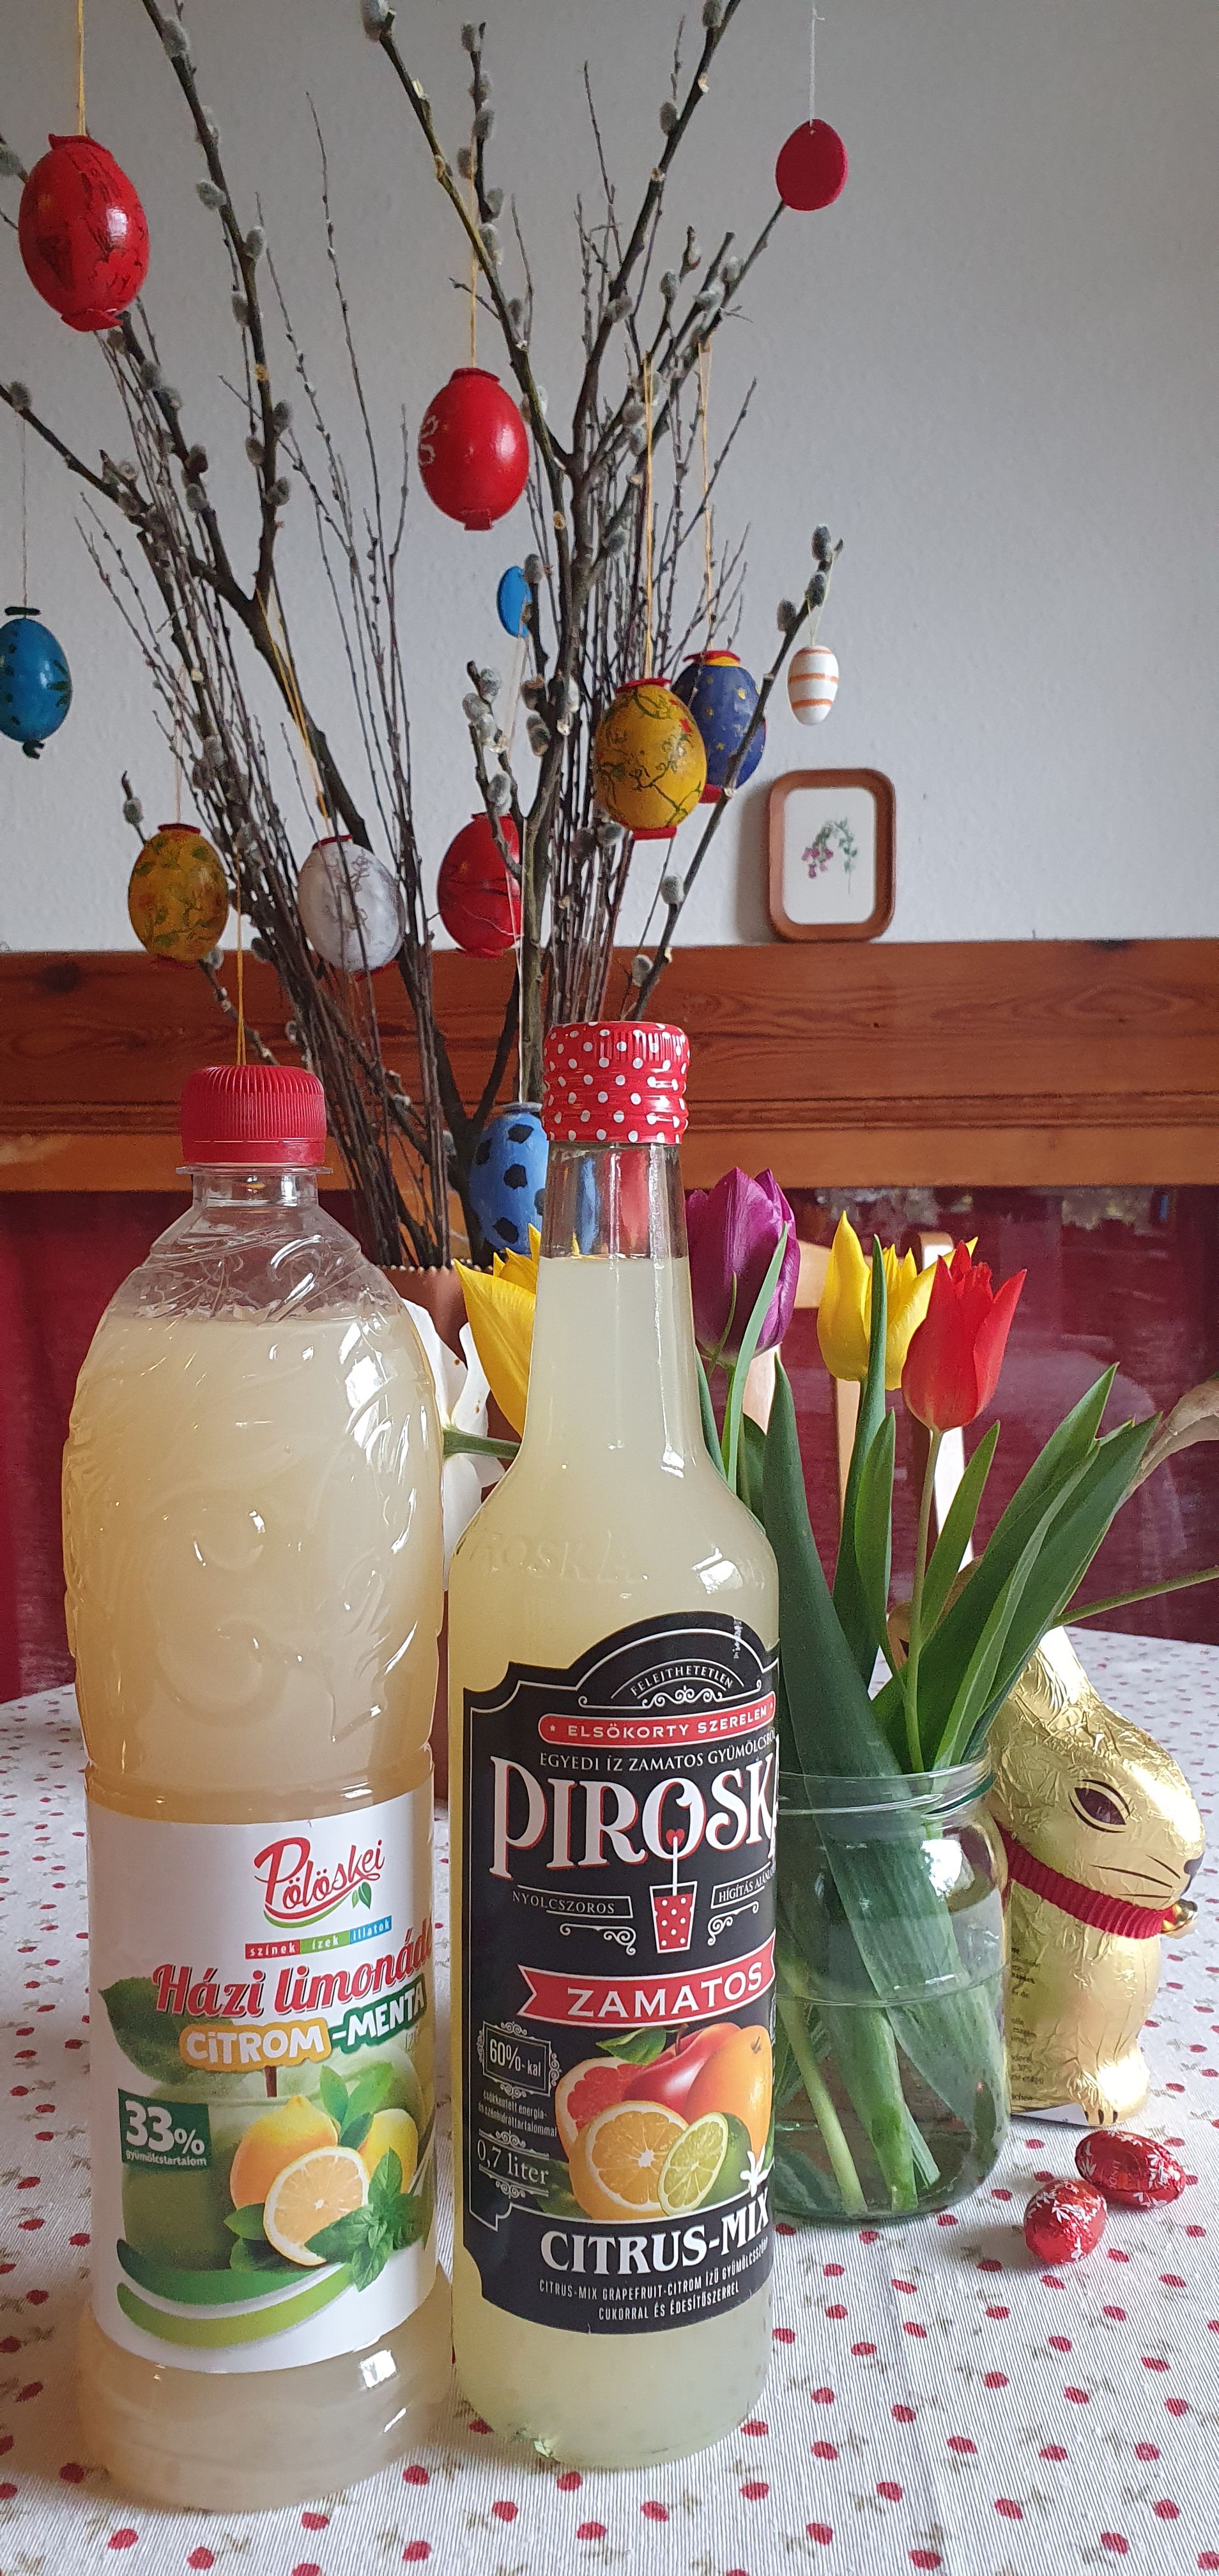 Piroska Citrus mix & Pölöskei Házi limonádé Citrom Menta